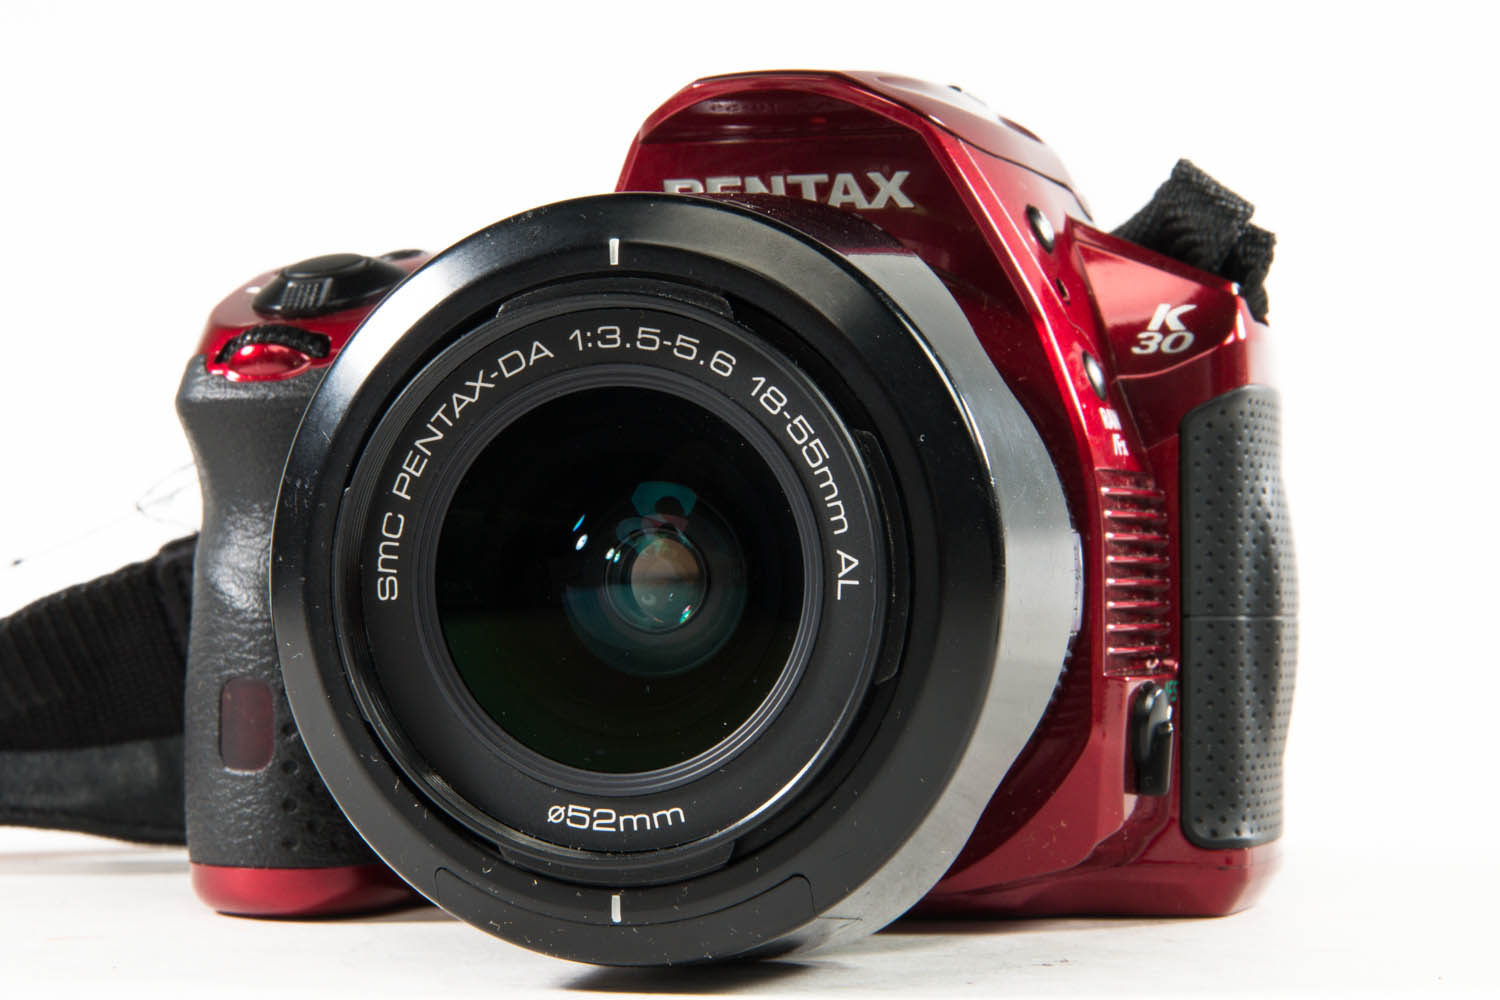 Pentax 18-55mm f3.5-5.6 AL gebraucht Bild 05